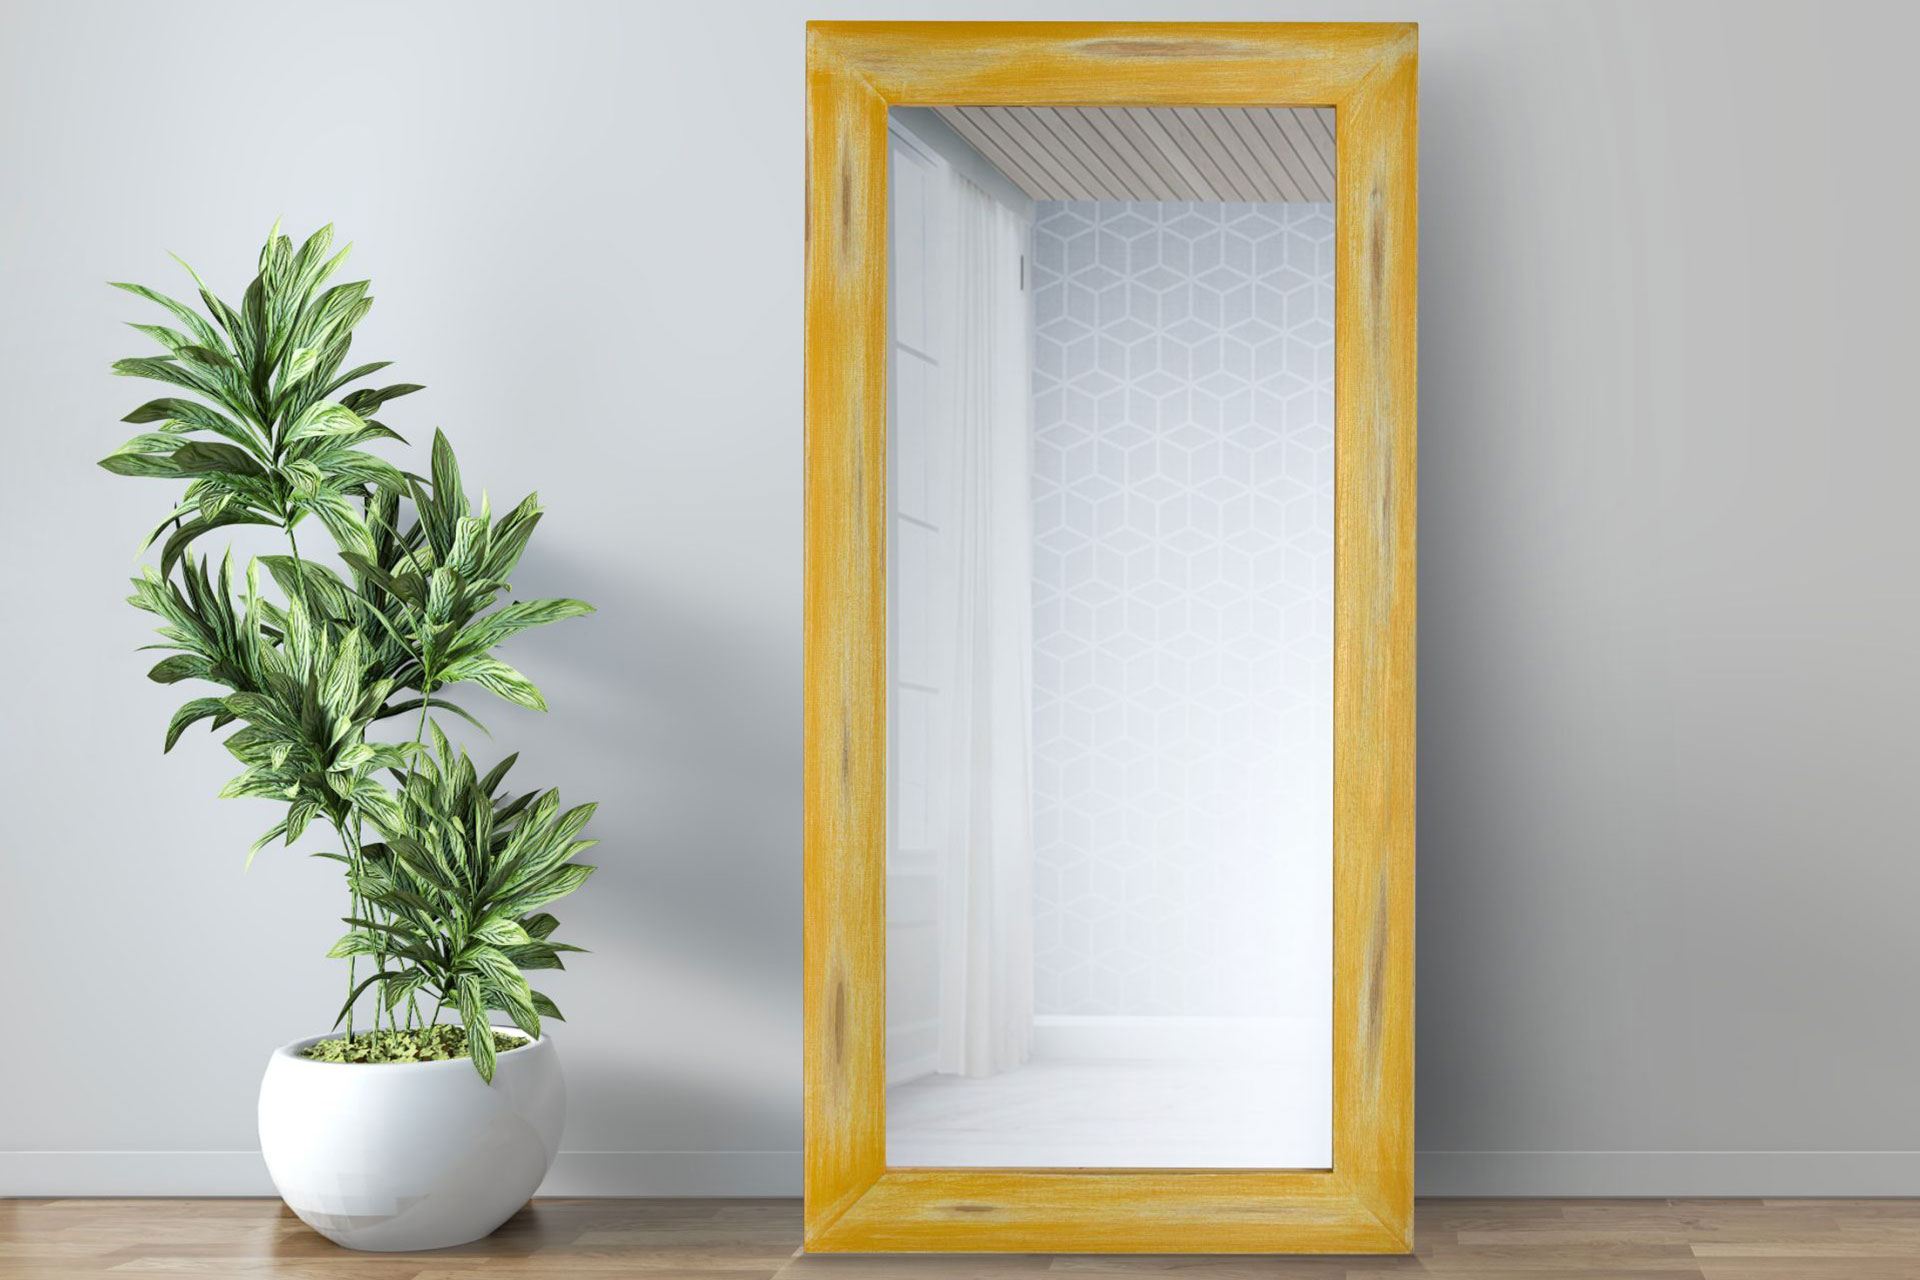 Modell Etta, rechteckig, Farbe: gelb, modern, Herstellung: ASR-Rahmendesign Material: Holz, Spiegel Facette, Ansicht an der Wand